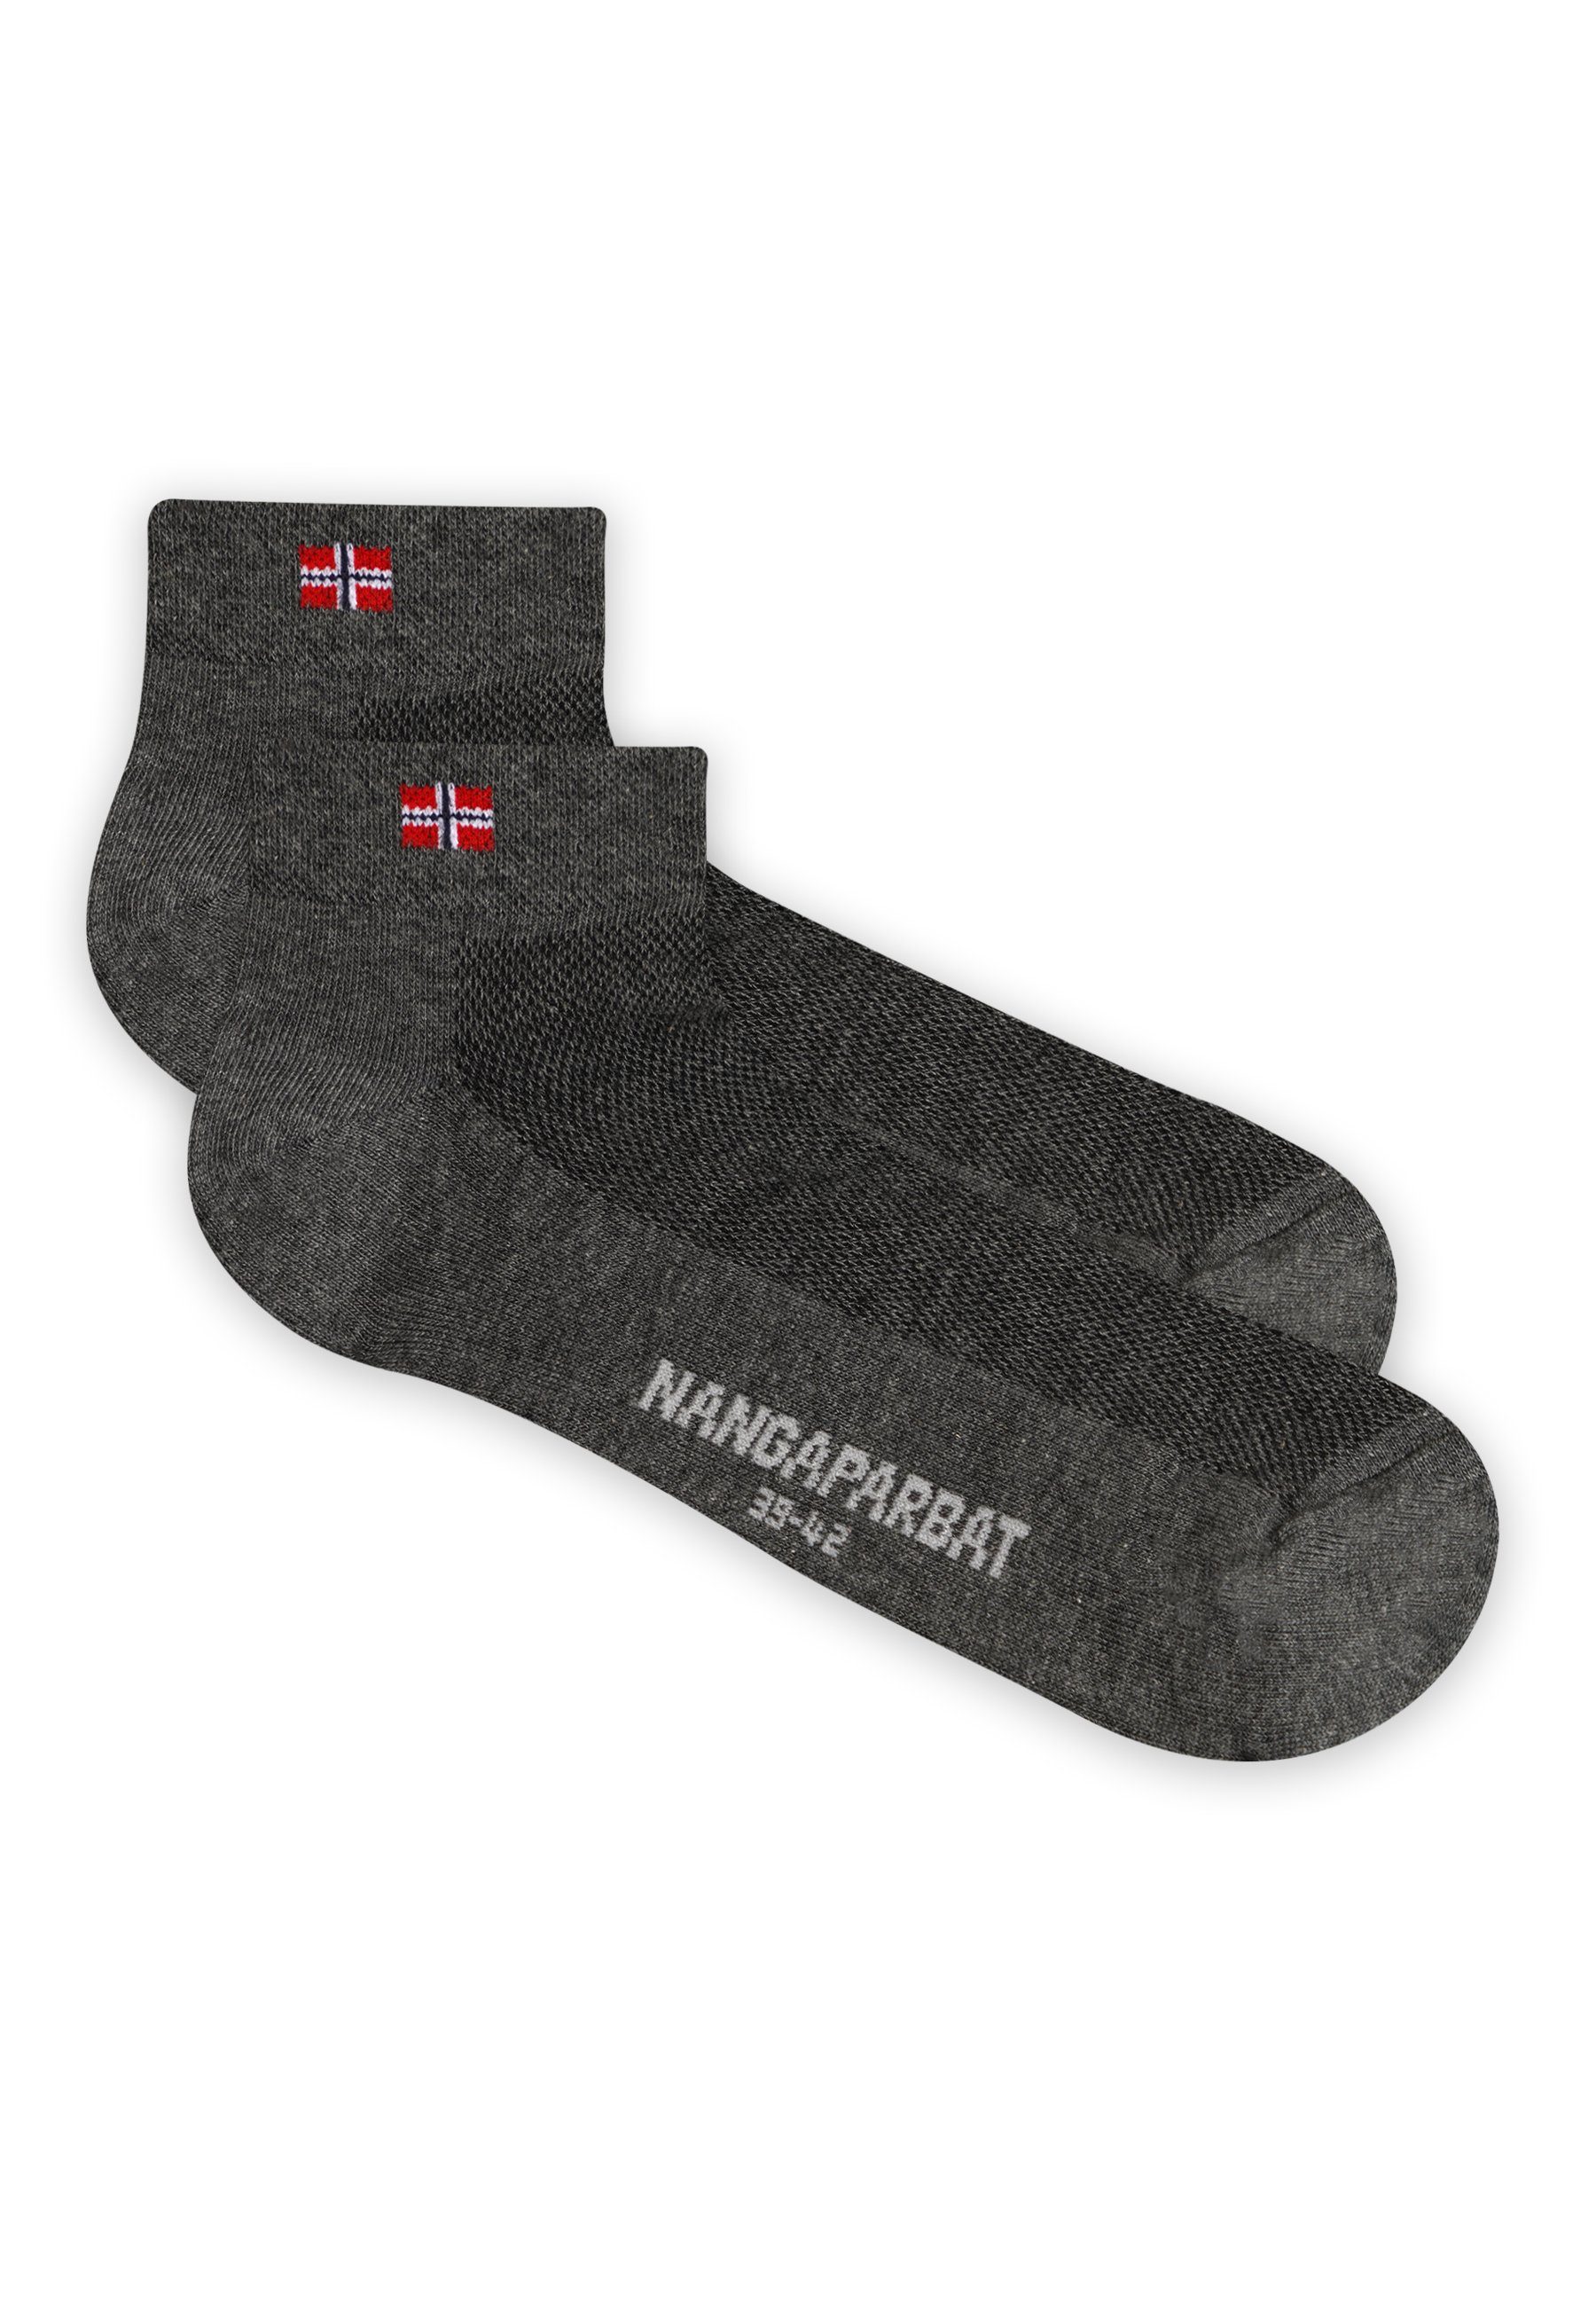 Trittdämpfung dunkelgrau mit komfortabler NANGAPARBAT Socken